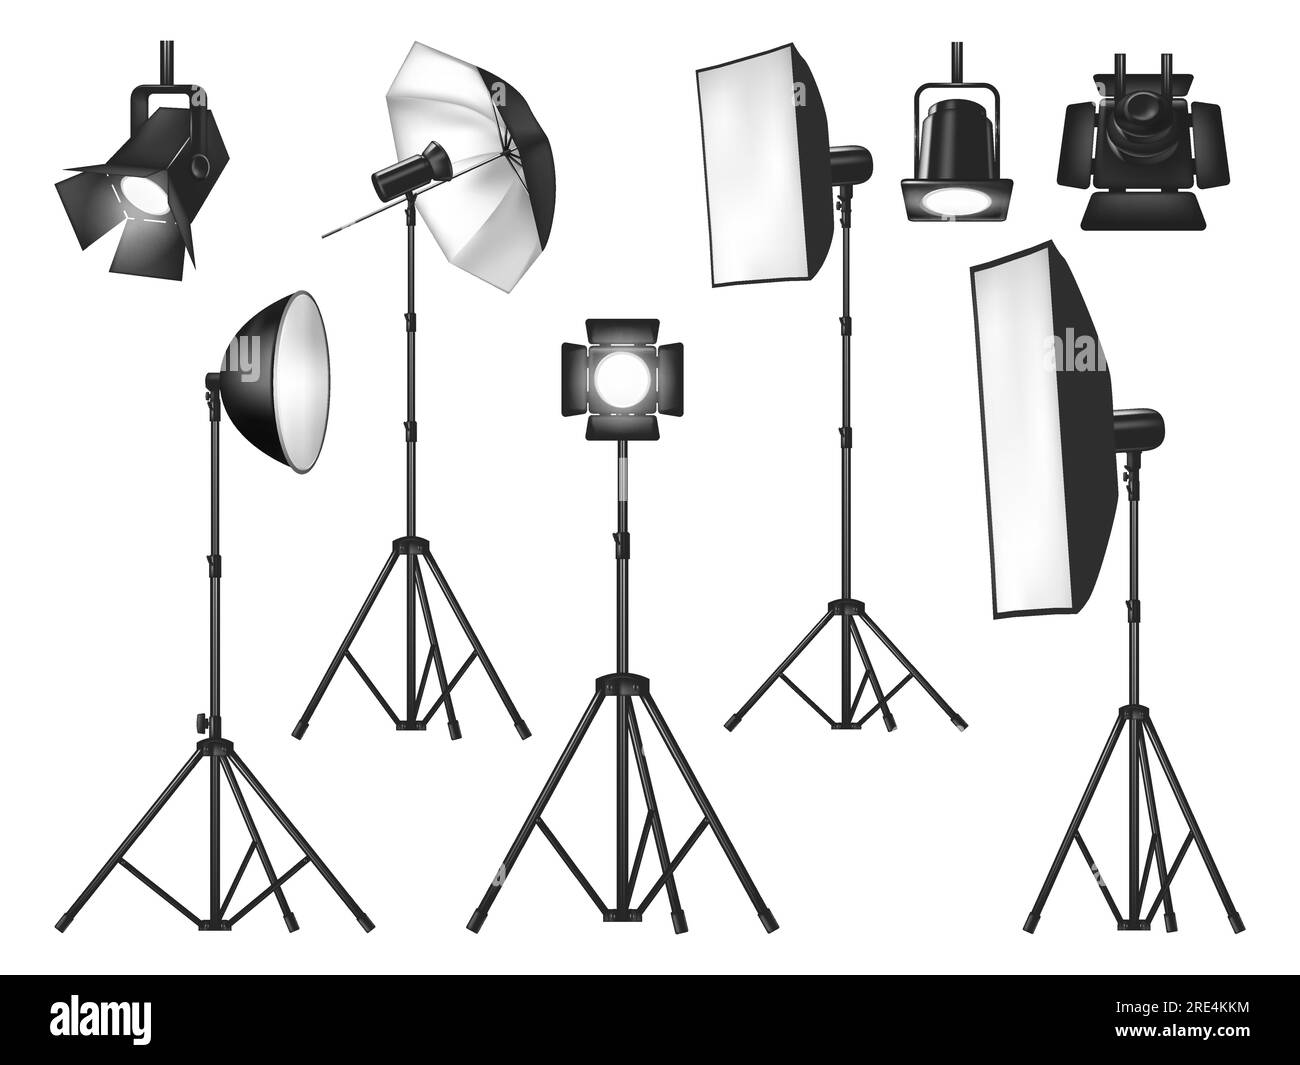 Beleuchtungsgeräte für Fotostudios und Lichter isolierte Vektorobjekte. Realistische 3D-Spots und Stative mit Blitzlampe, Reflektor und Softbox, Schirm und Flutlicht, Beleuchtungssatz für Fotografen Stock Vektor